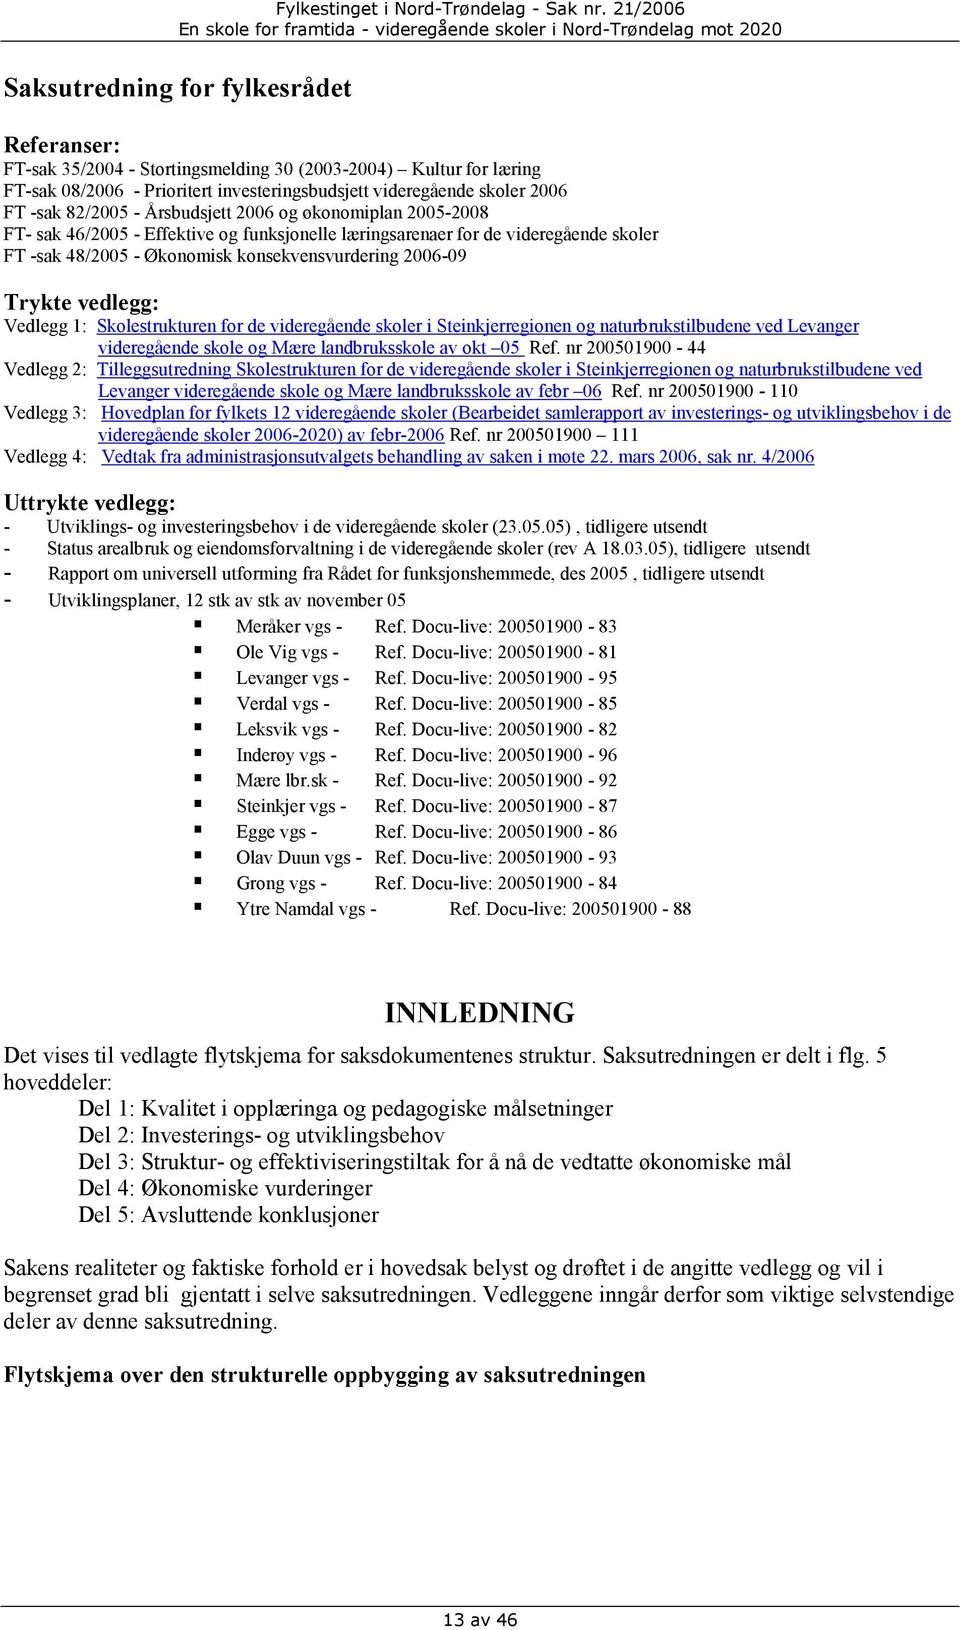 vedlegg: Vedlegg 1: Skolestrukturen for de videregående skoler i Steinkjerregionen og naturbrukstilbudene ved Levanger videregående skole og Mære landbruksskole av okt 05 Ref.